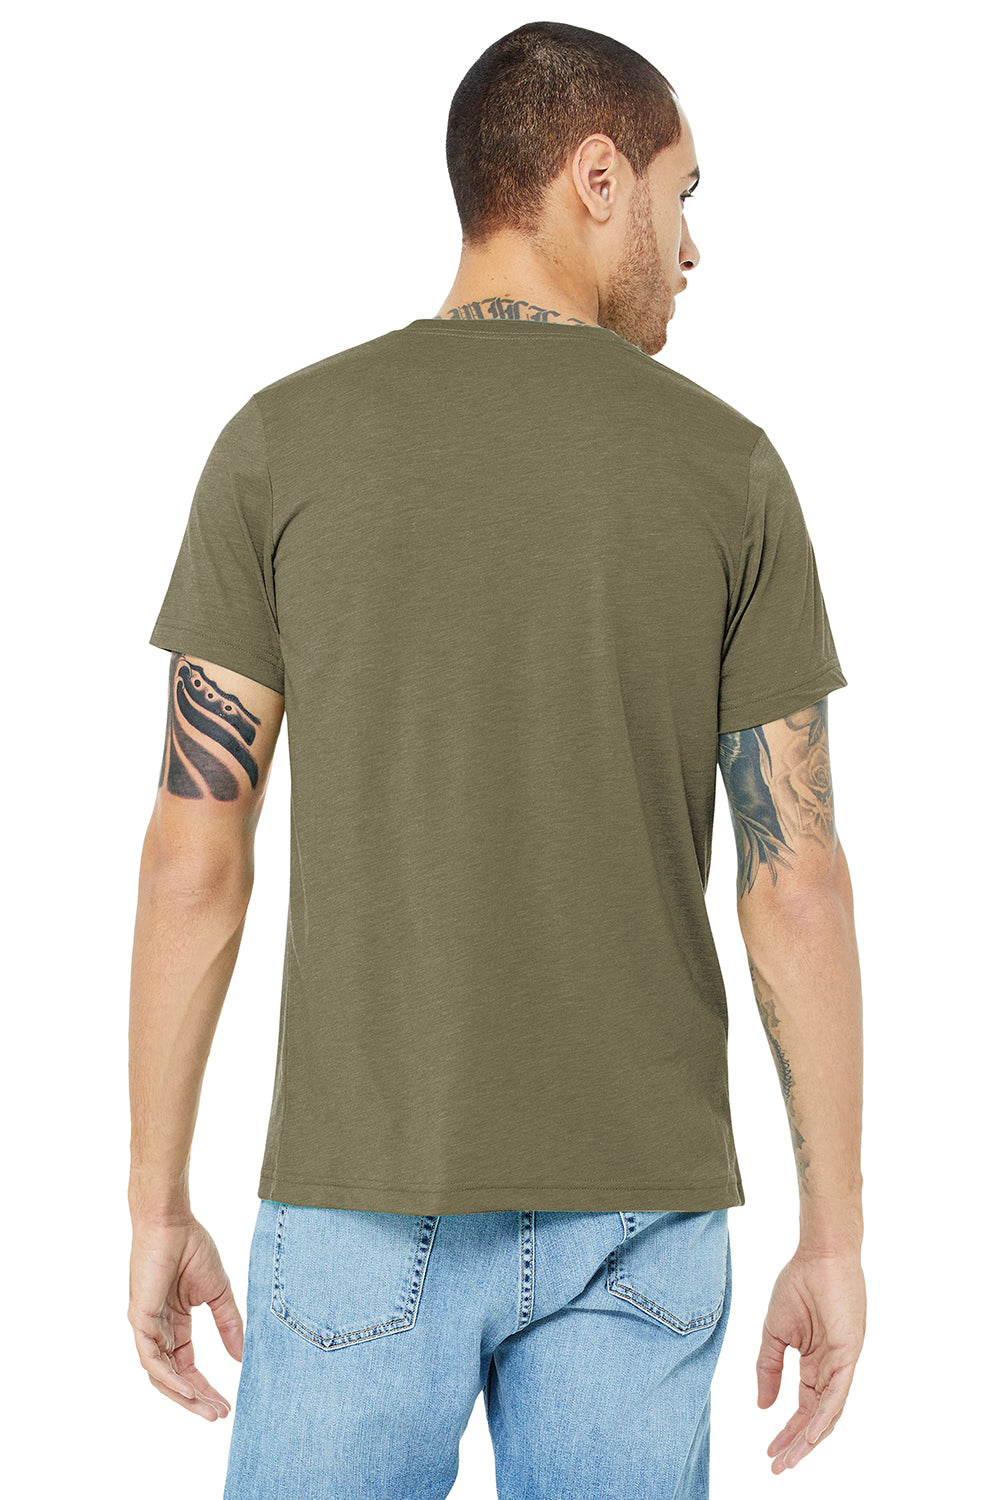 Bella + Canvas BC3413/3413C/3413 Mens Short Sleeve Crewneck T-Shirt Olive Green Model Back